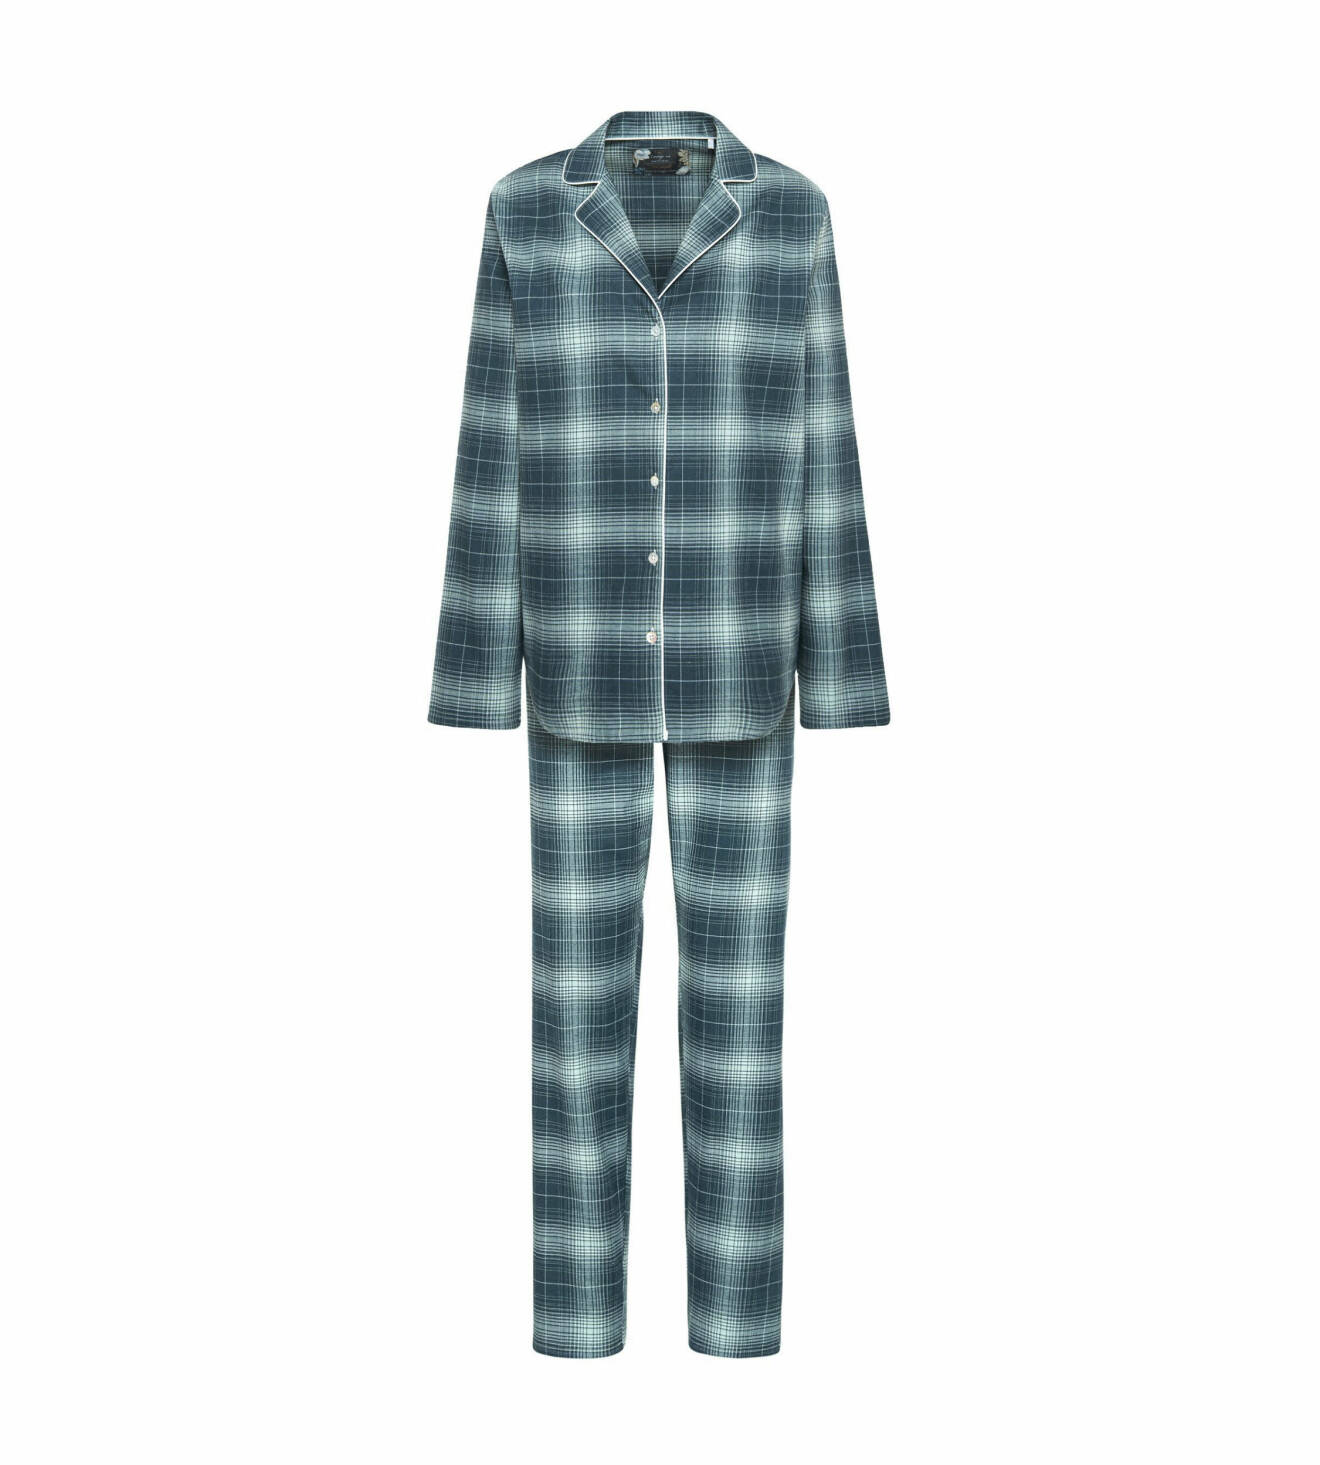 Pyjamas från Triumph.